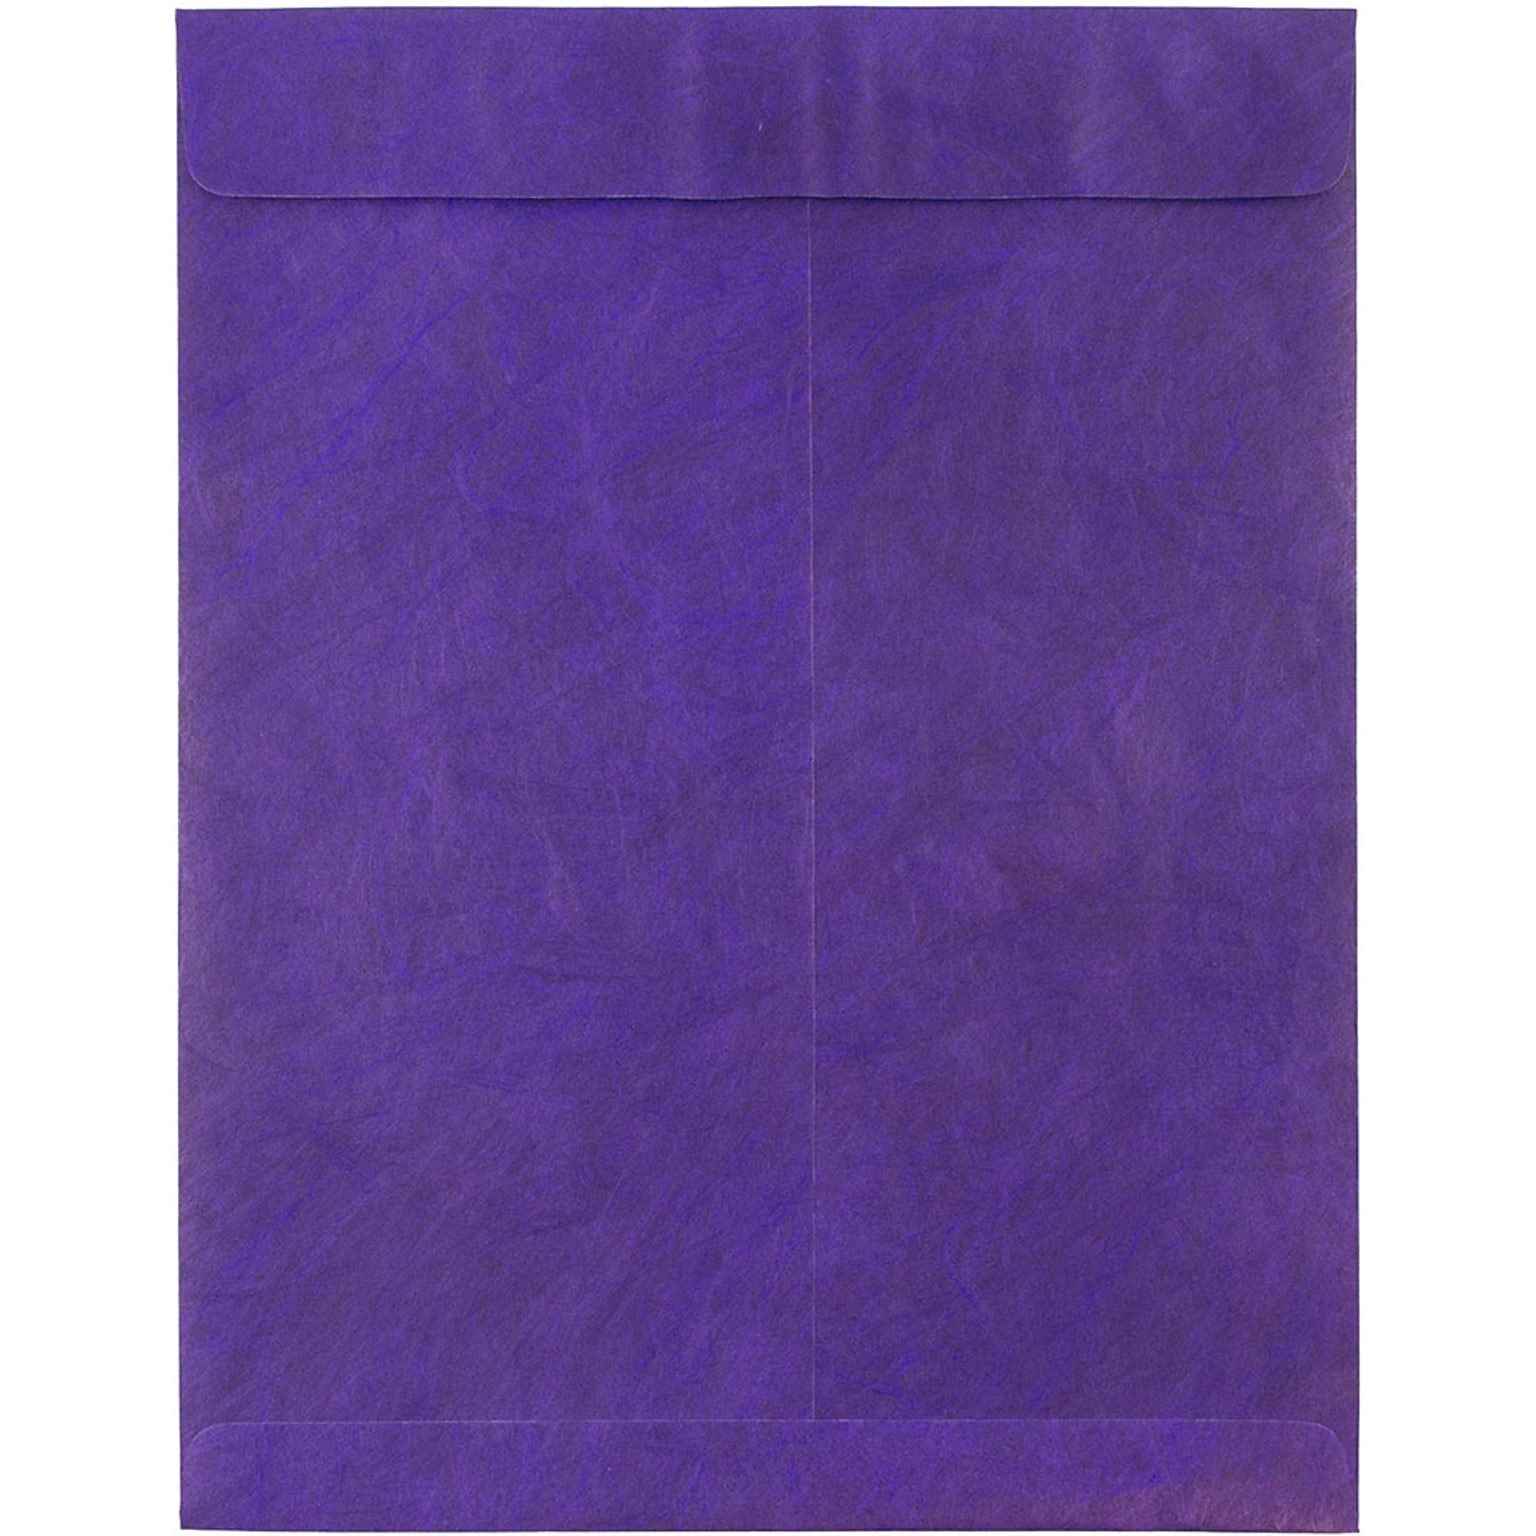 JAM Paper Tear-Proof Tyvek Open End Catalog Envelopes, 10 x 13, Purple, 25/Pack (V021382)